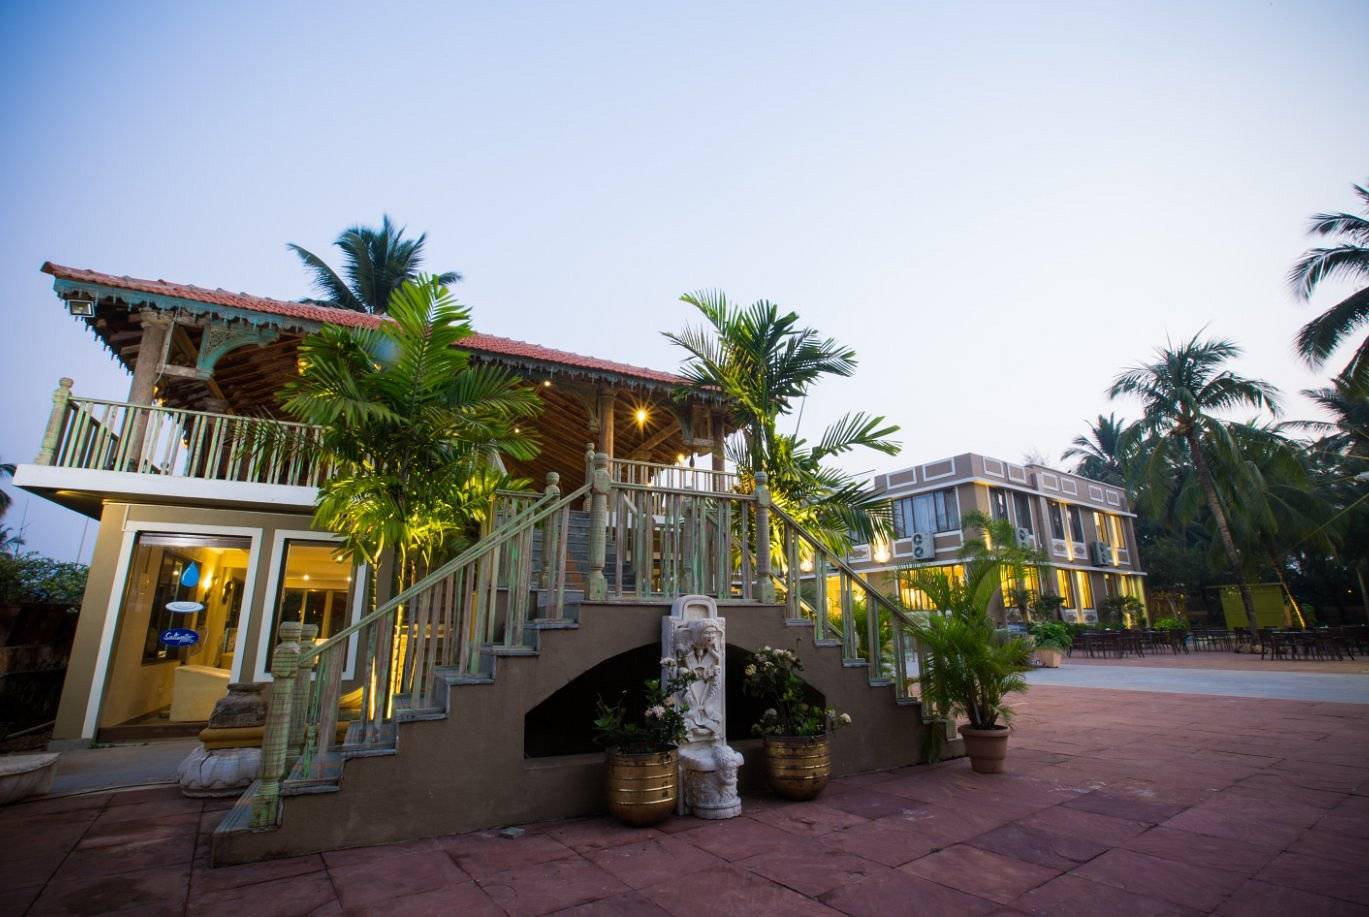 Отель acacia palms resort 3*** (колва / индия) - отзывы туристов о гостинице описание номеров с фото